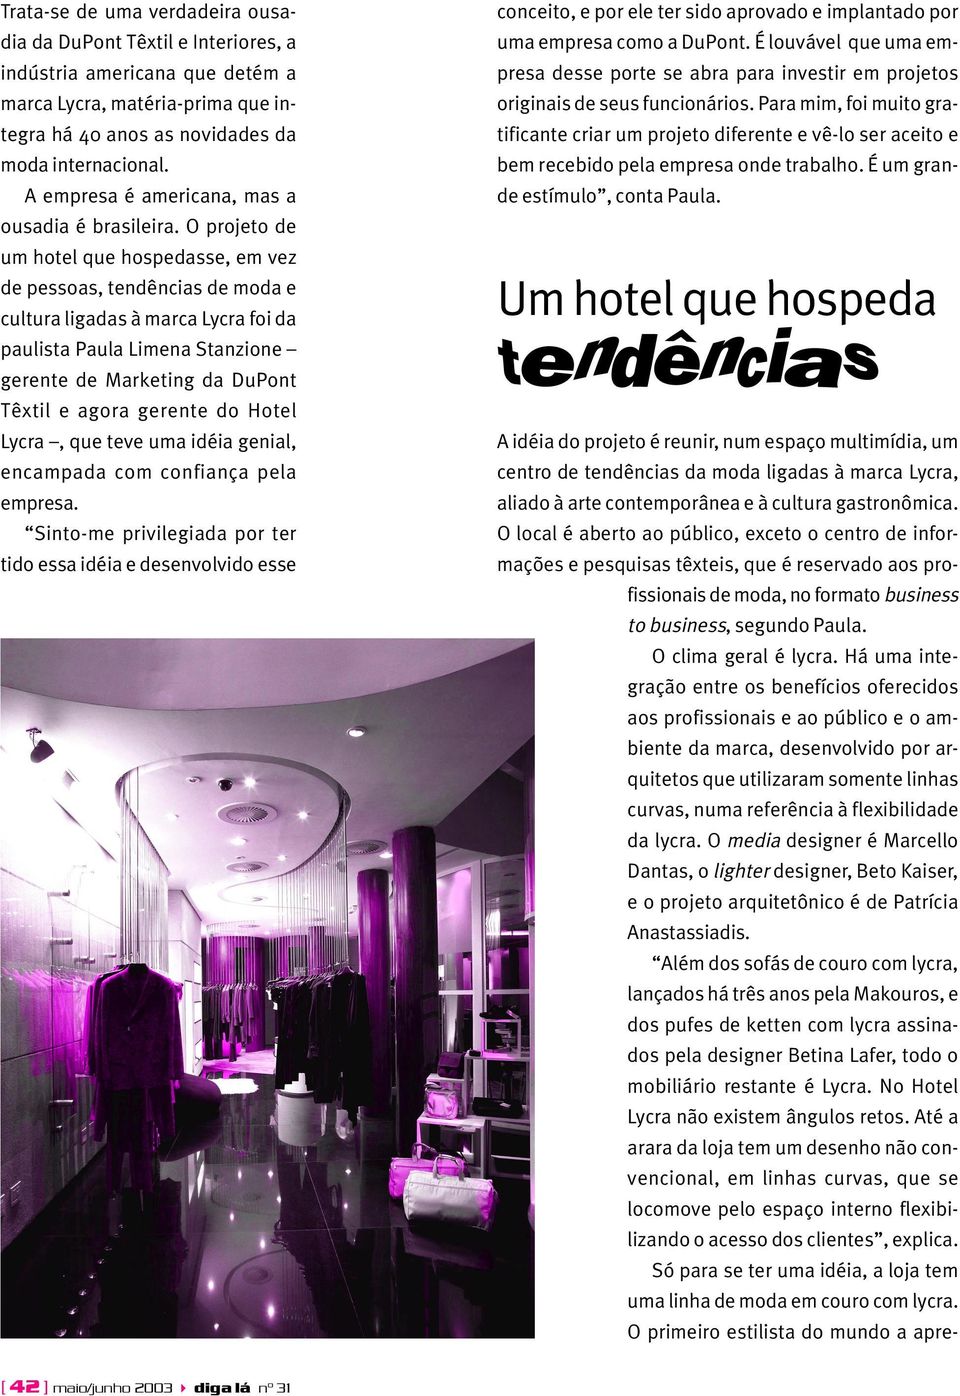 O projeto de um hotel que hospedasse, em vez de pessoas, tendências de moda e cultura ligadas à marca Lycra foi da paulista Paula Limena Stanzione gerente de Marketing da DuPont Têxtil e agora